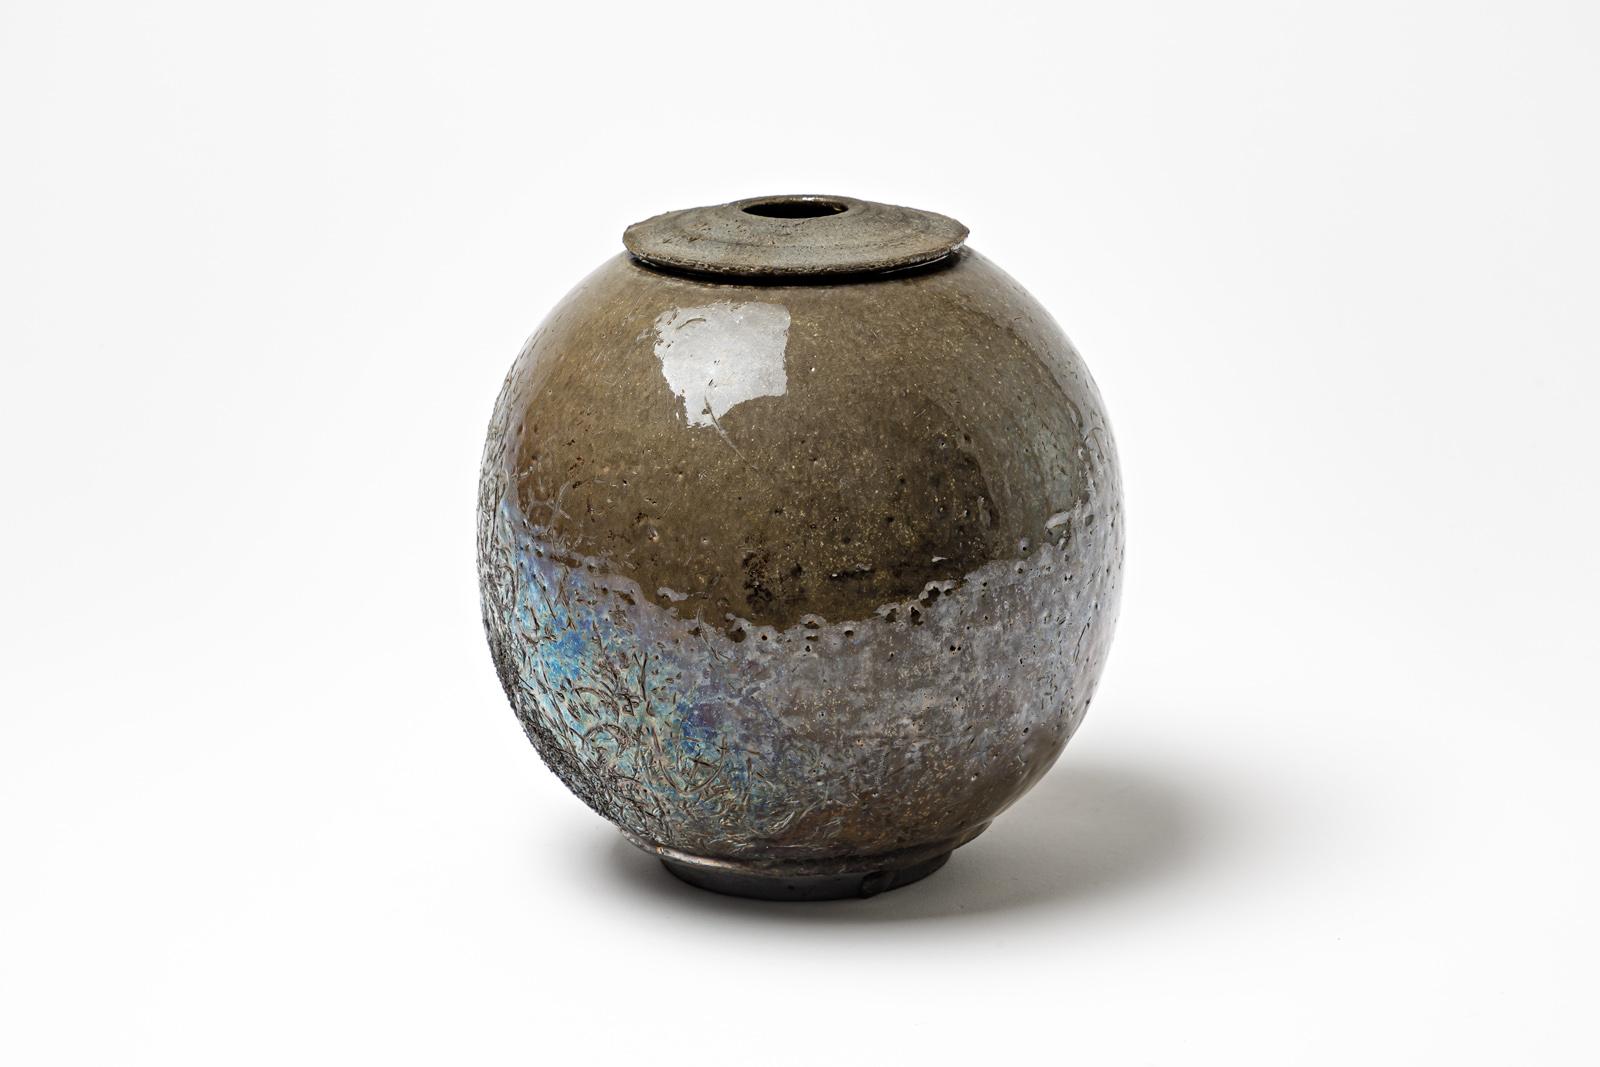 Vase aus braun glasiertem Steingut mit metallischen Highlights von Gisèle Buthod-Garçon. Raku gebrannt. Künstlermonogramm unter dem Sockel. CIRCA 1980-1990.
H : 7,5' x 6,7' Zoll.